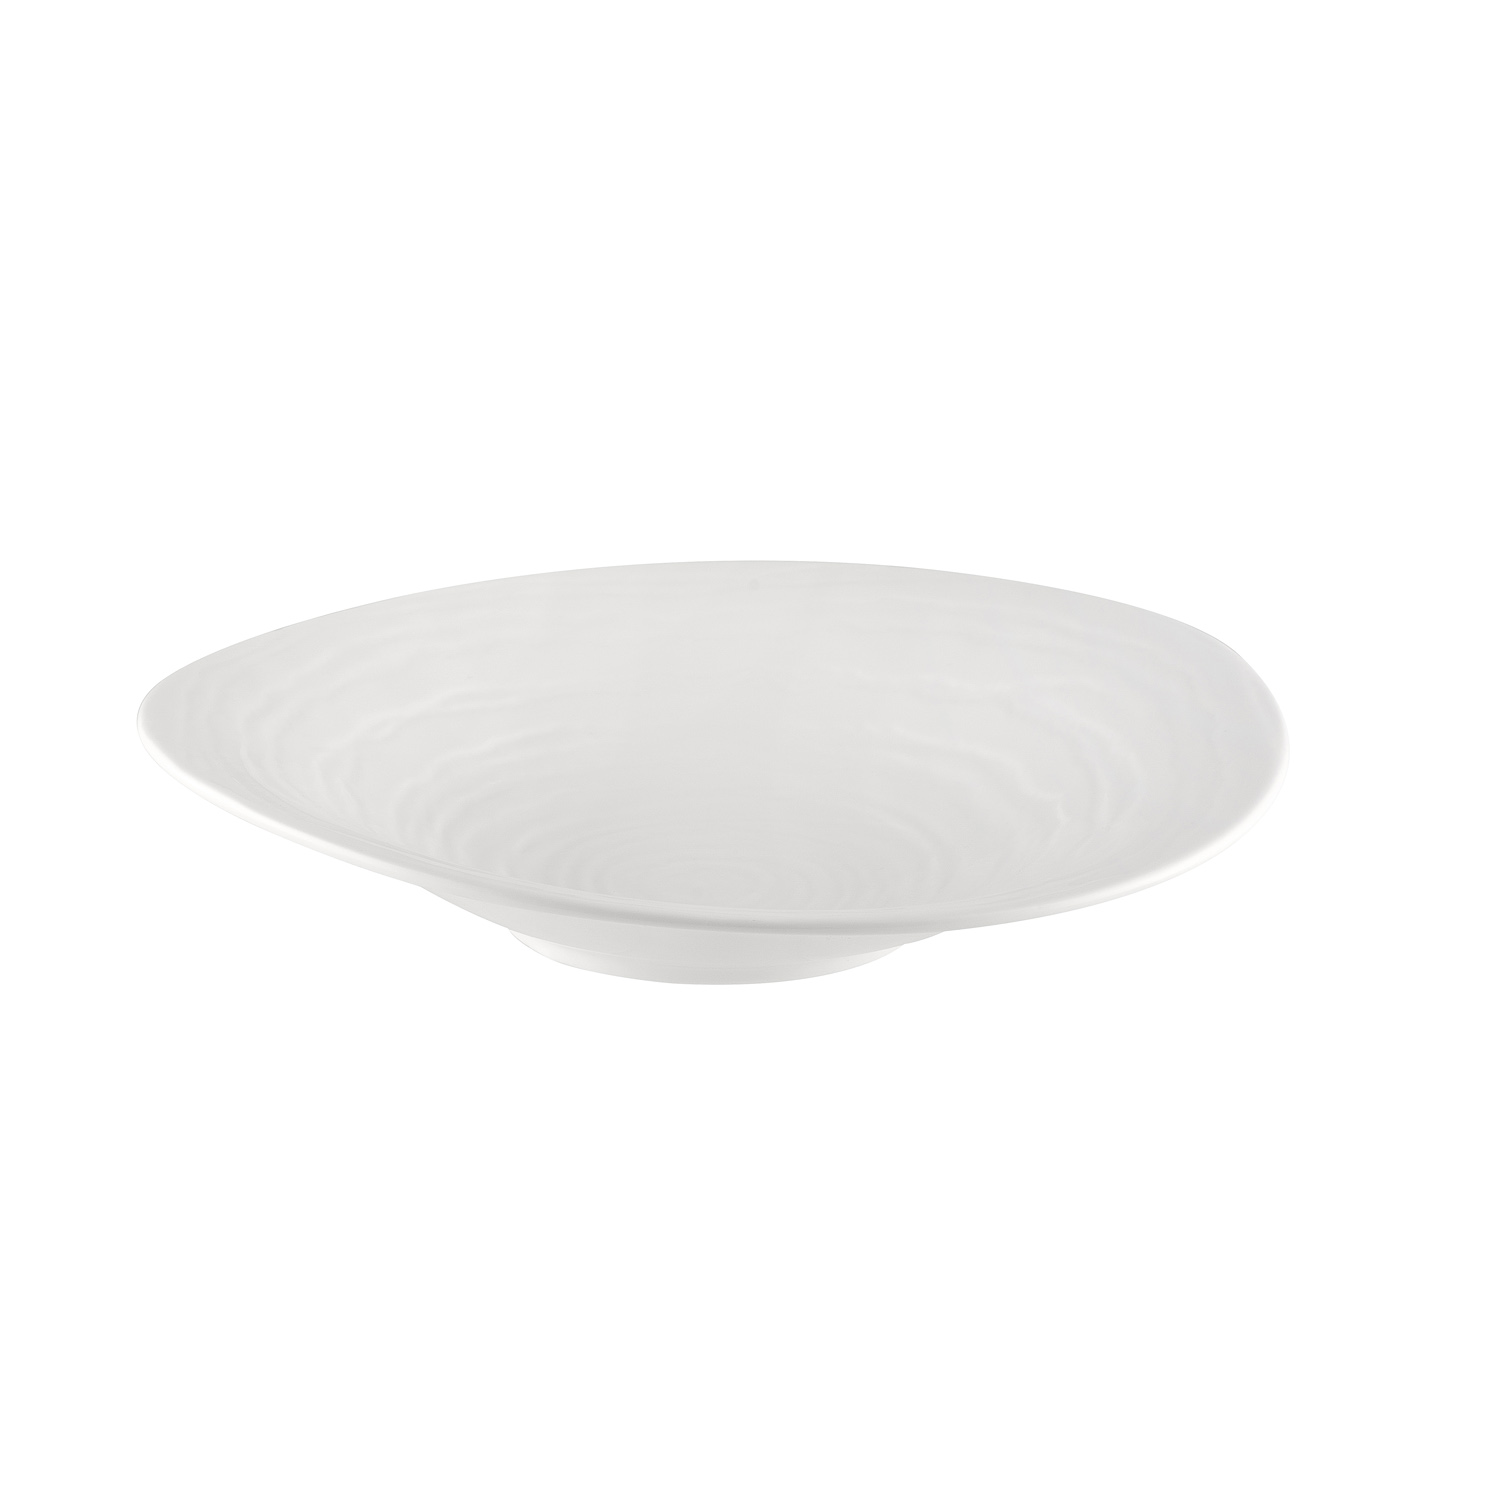 CAC China BHM-SP16 Bahamas Bone White Porcelain Salad Plate 16.25 oz., 10 3/4" - 1 dozen